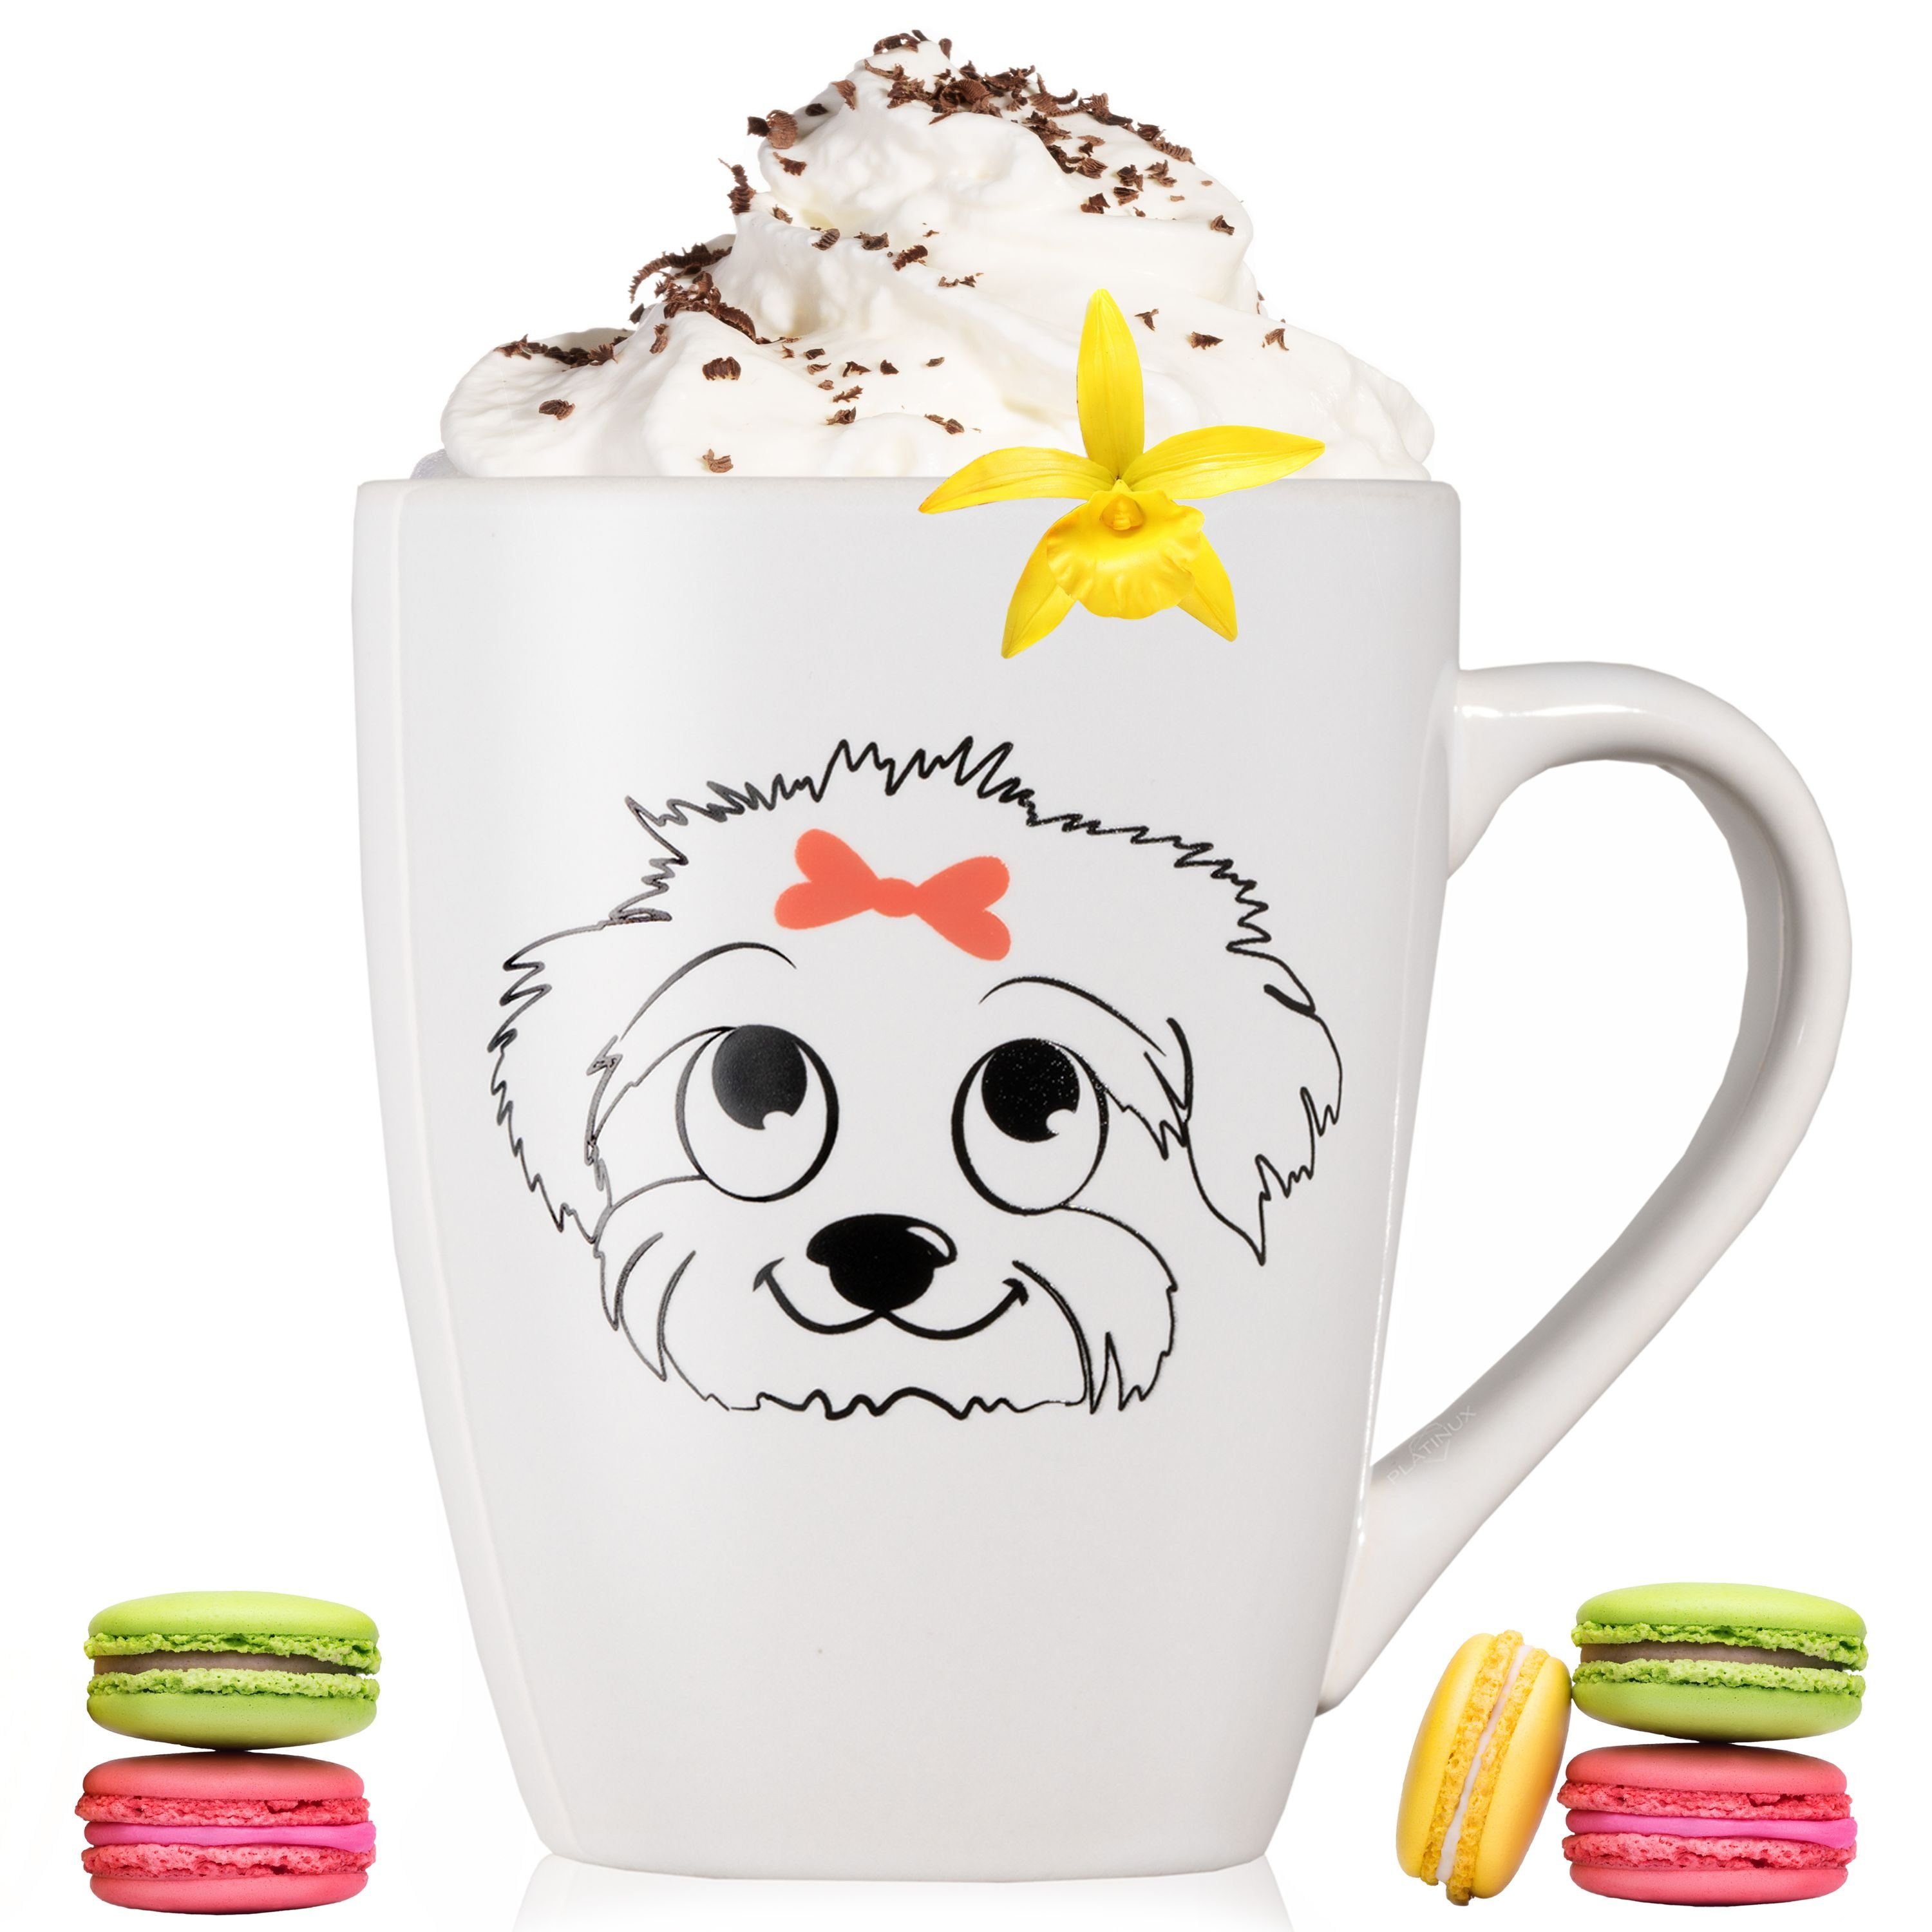 Keramik, Kaffeetasse mit Teetasse Tasse Teebecher Griff aus PLATINUX Tasse Motiv "Susi", mit Kaffeebecher Hunde 250ml Keramik